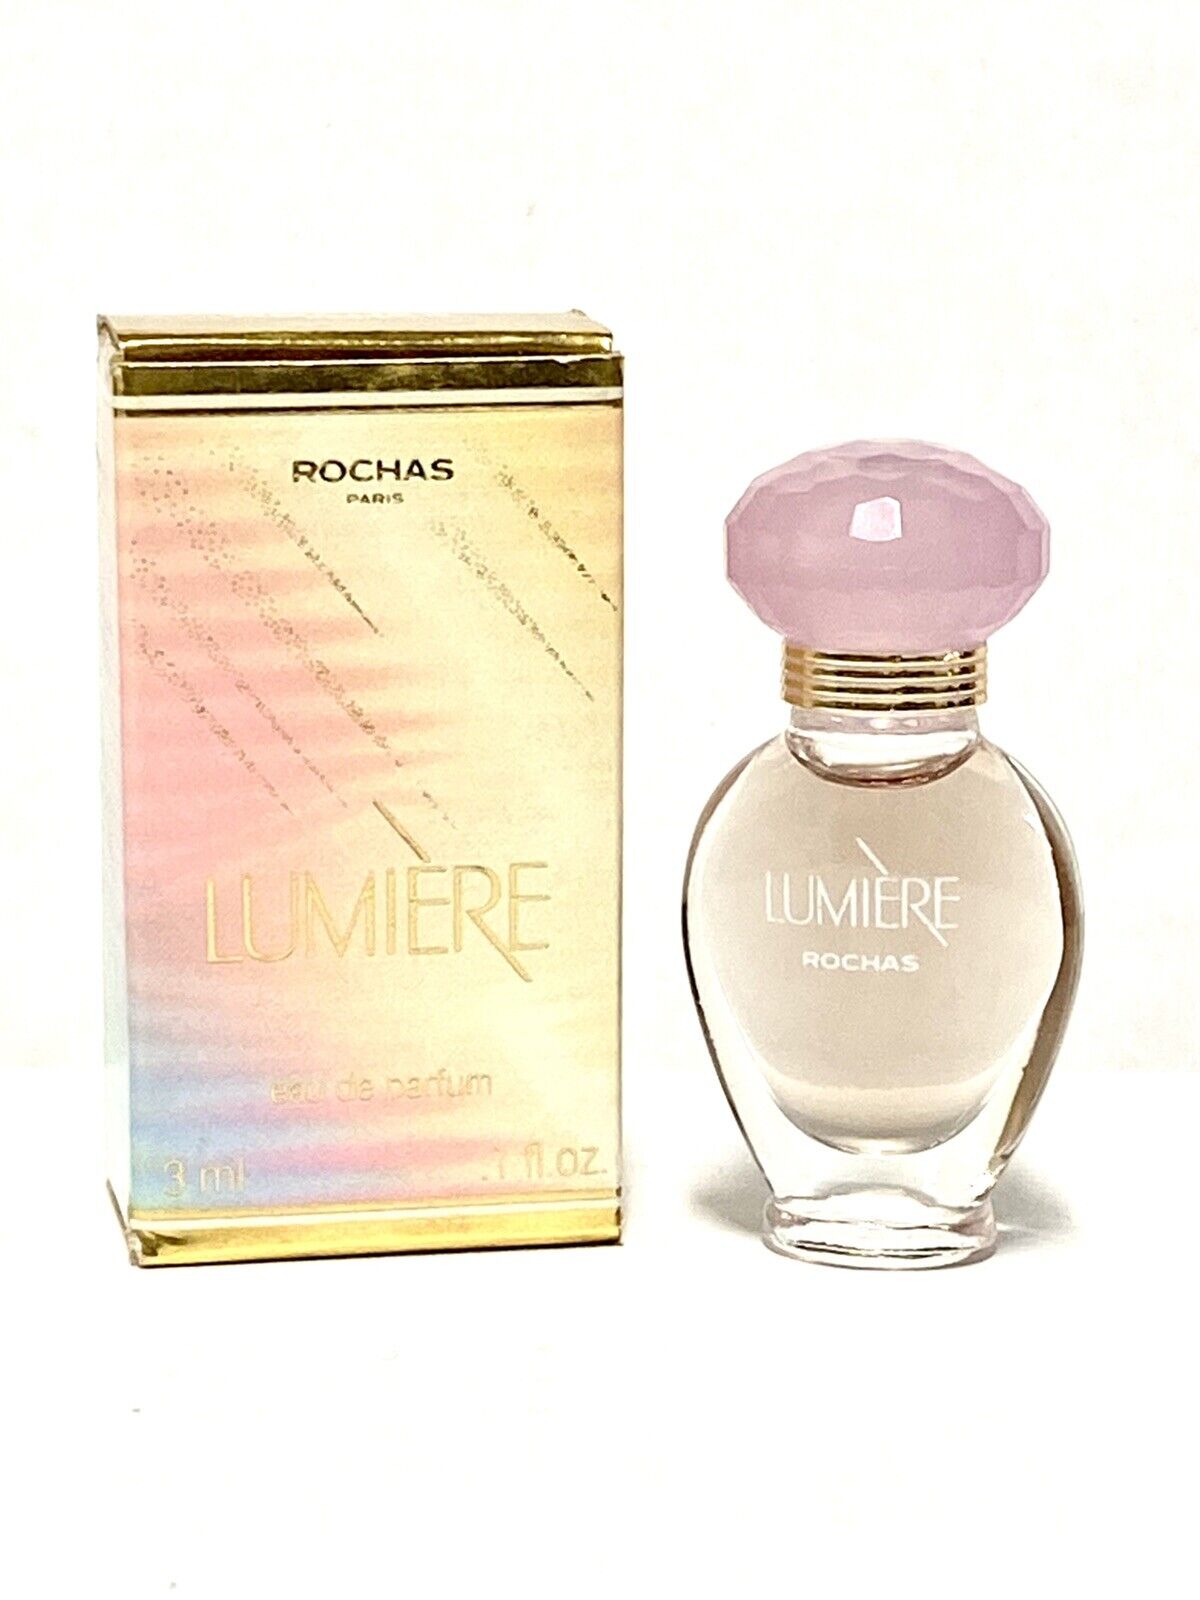 LUMIERE by ROCHAS Women Perfume 0.1oz-3ml EDP Splash MINI SIZE *VINTAGE*(BI08